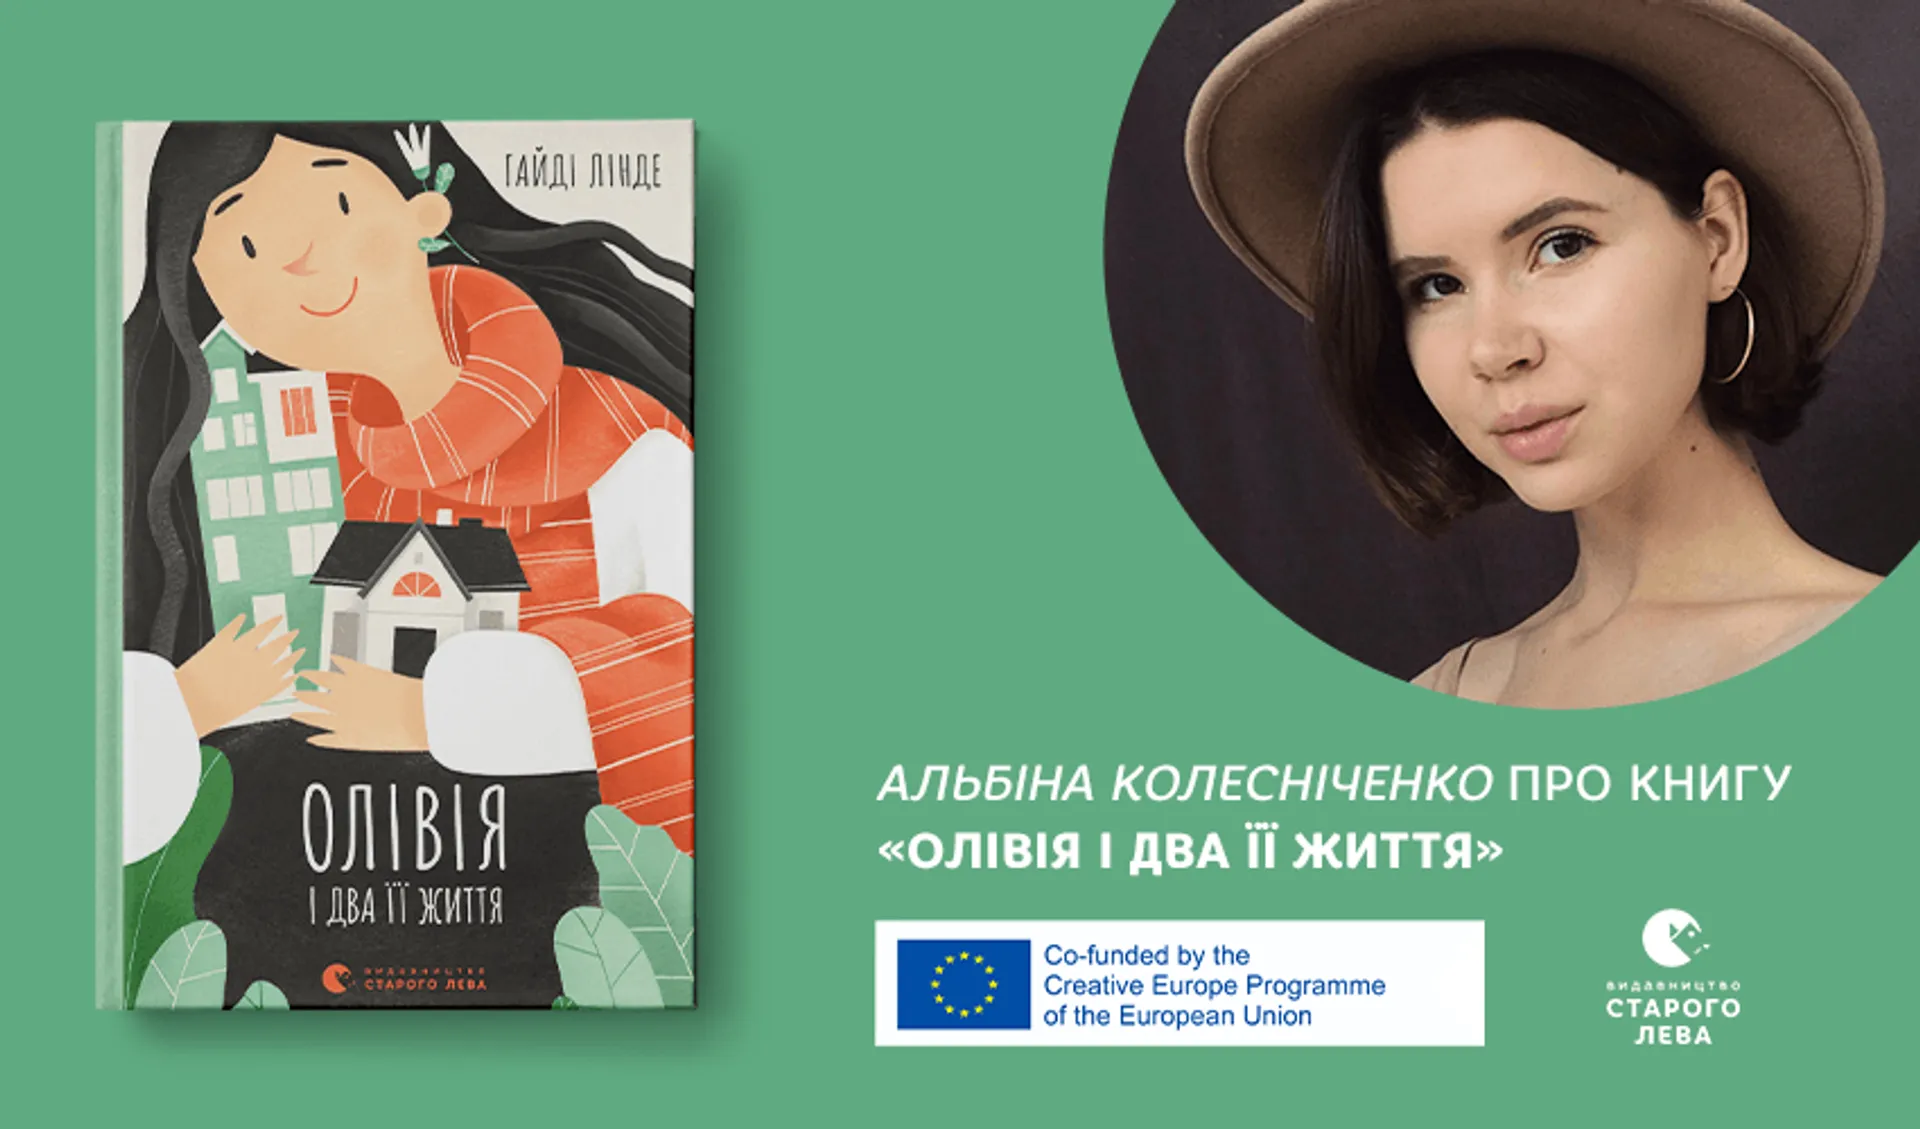 Ілюстраторка Альбіна Колесніченко про книгу «Олівія і два її життя»